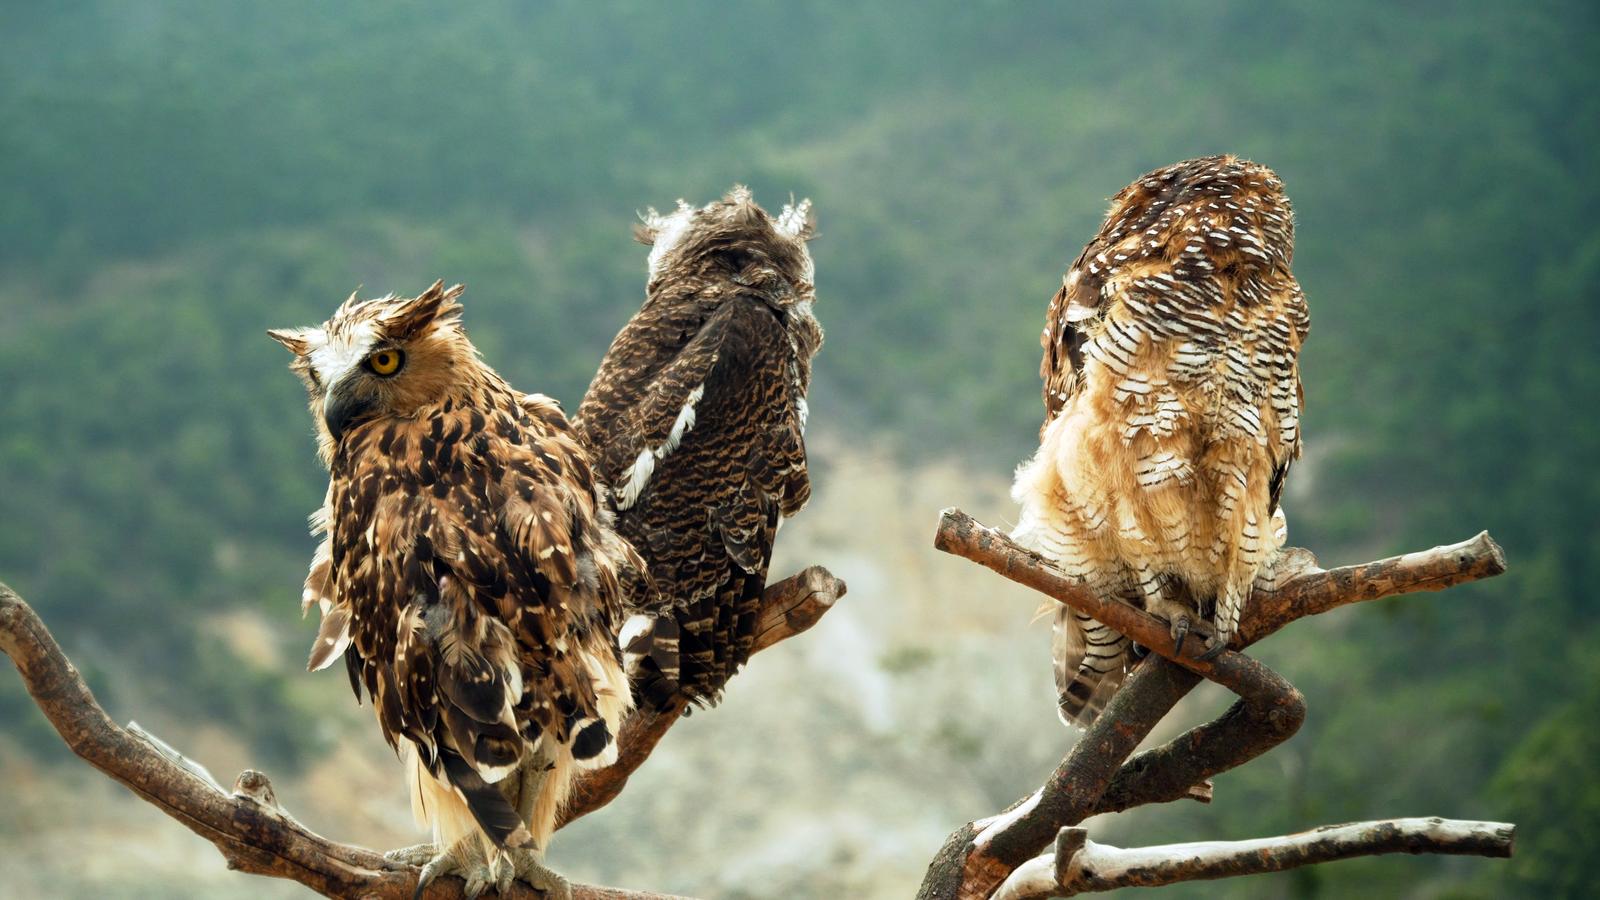 Three medium -sized owls sitting on a branch